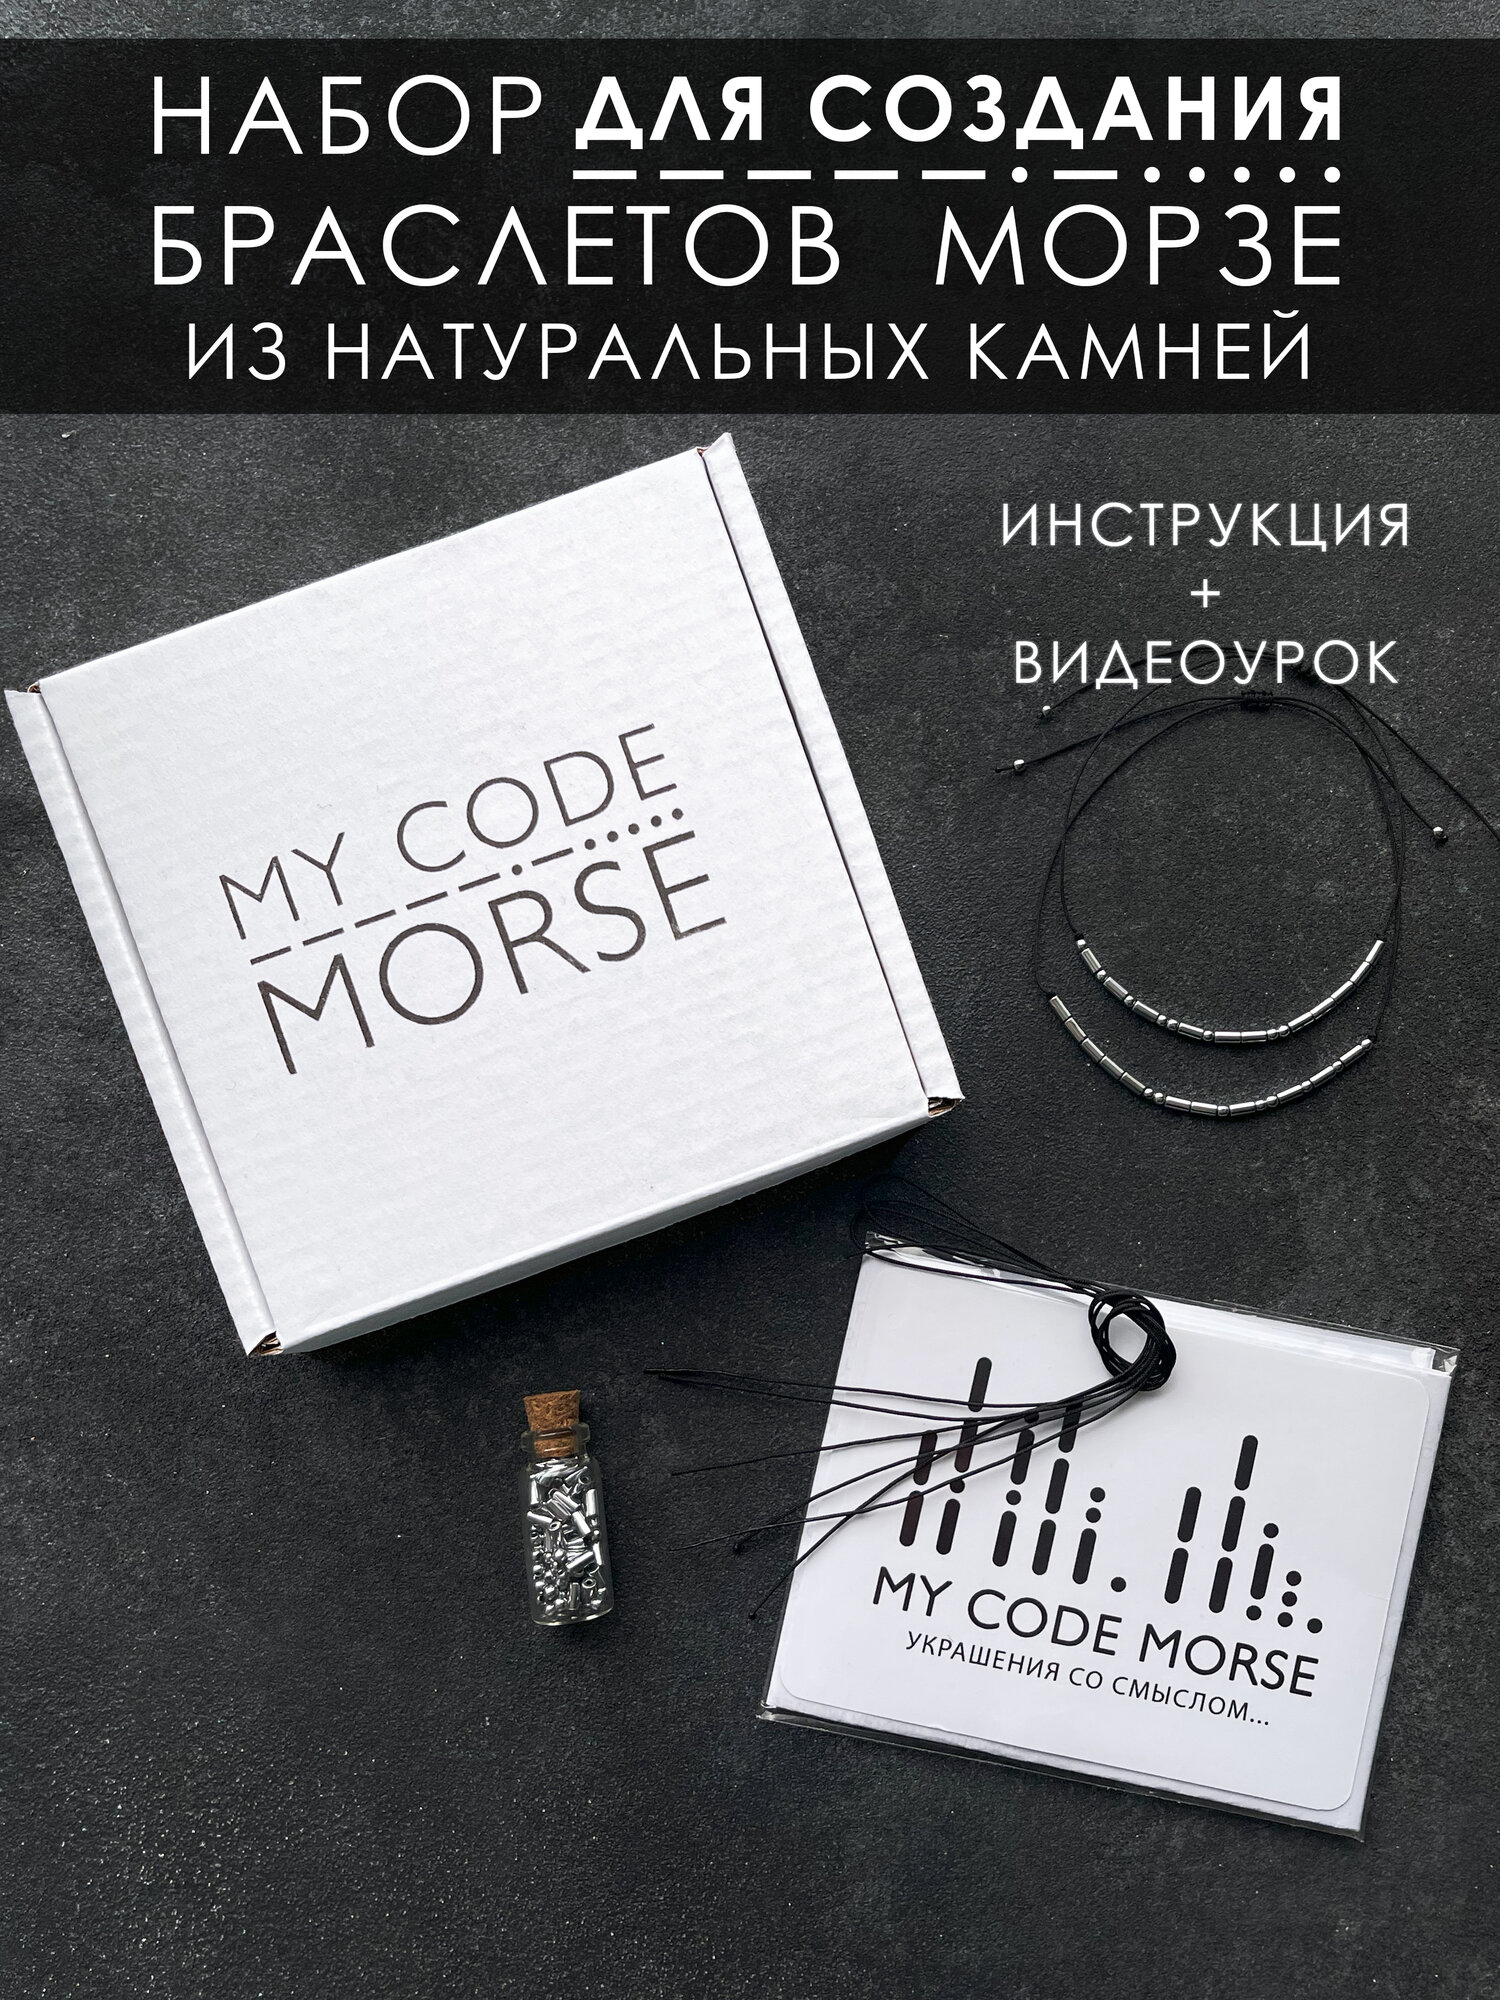 Парные браслеты MY CODE MORSE / Набор для создания парных браслетов с шифром Морзе из серебристого гематита